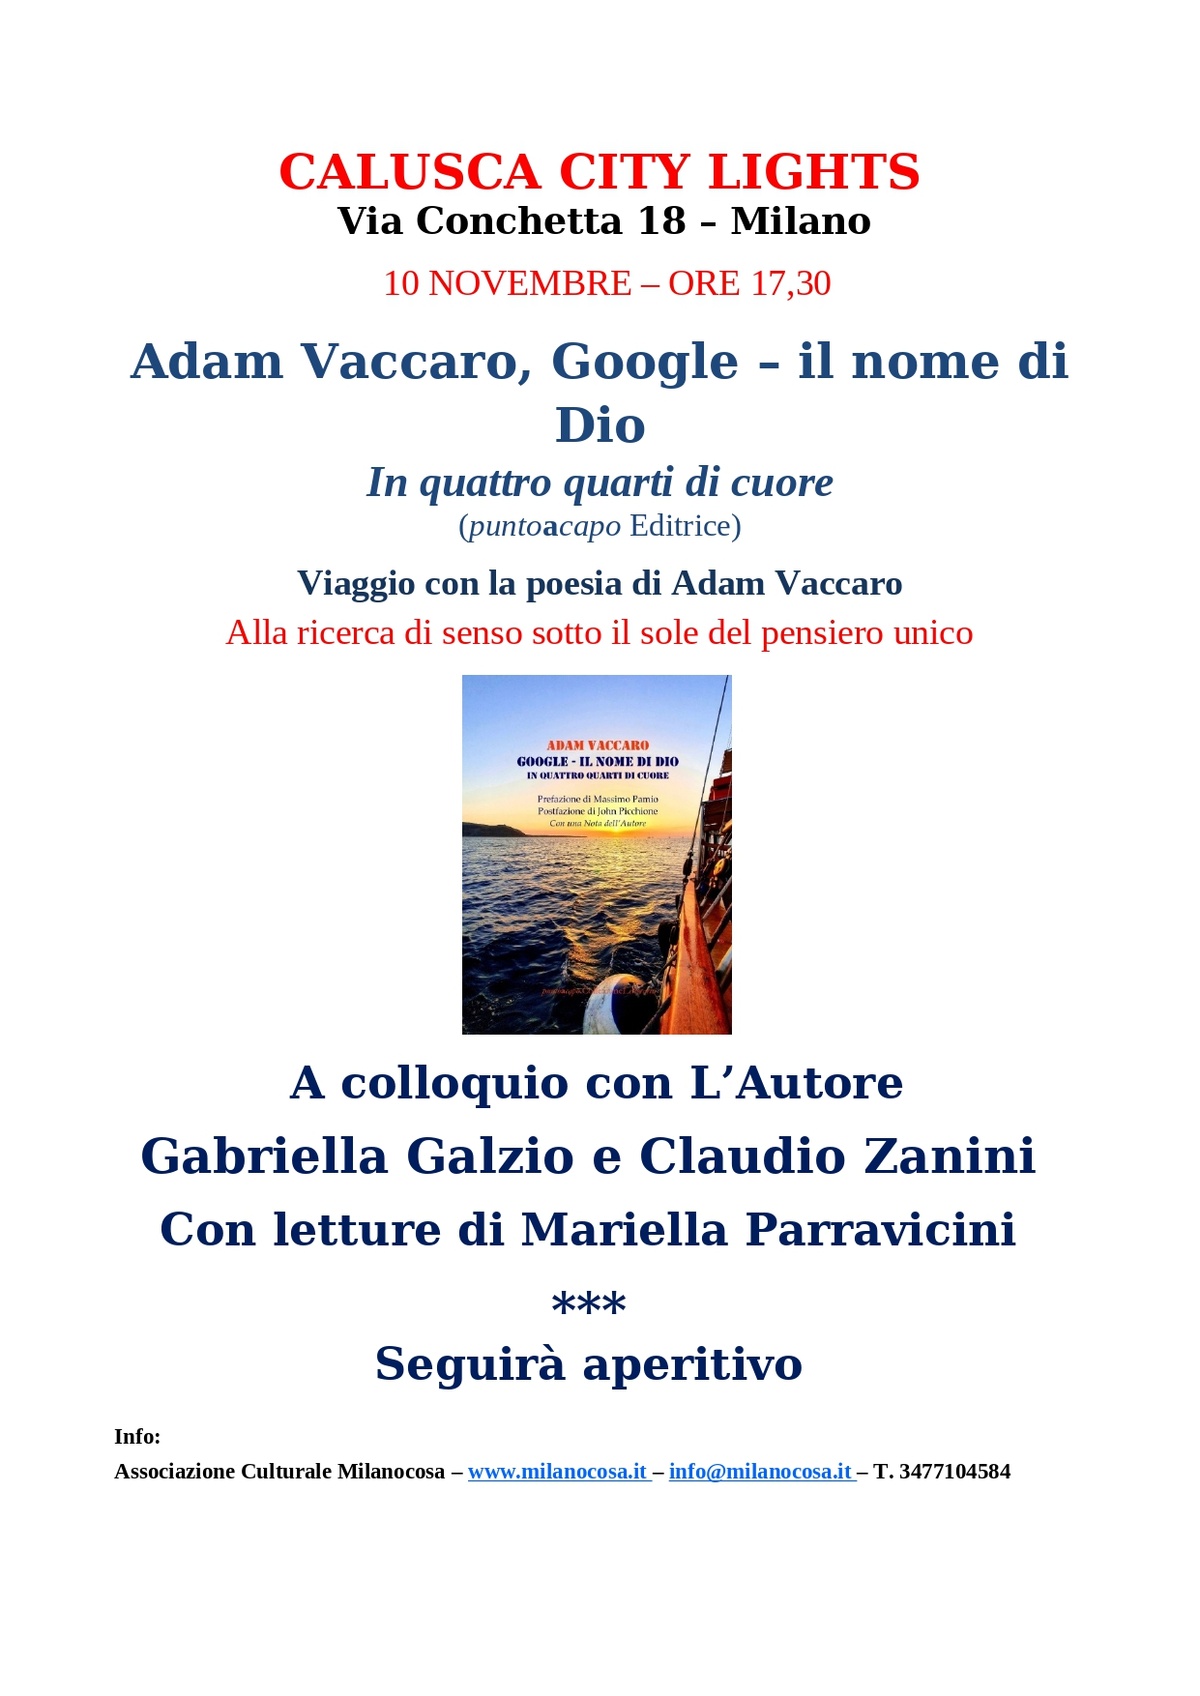 Adam Vaccaro, Google – il nome di Dio